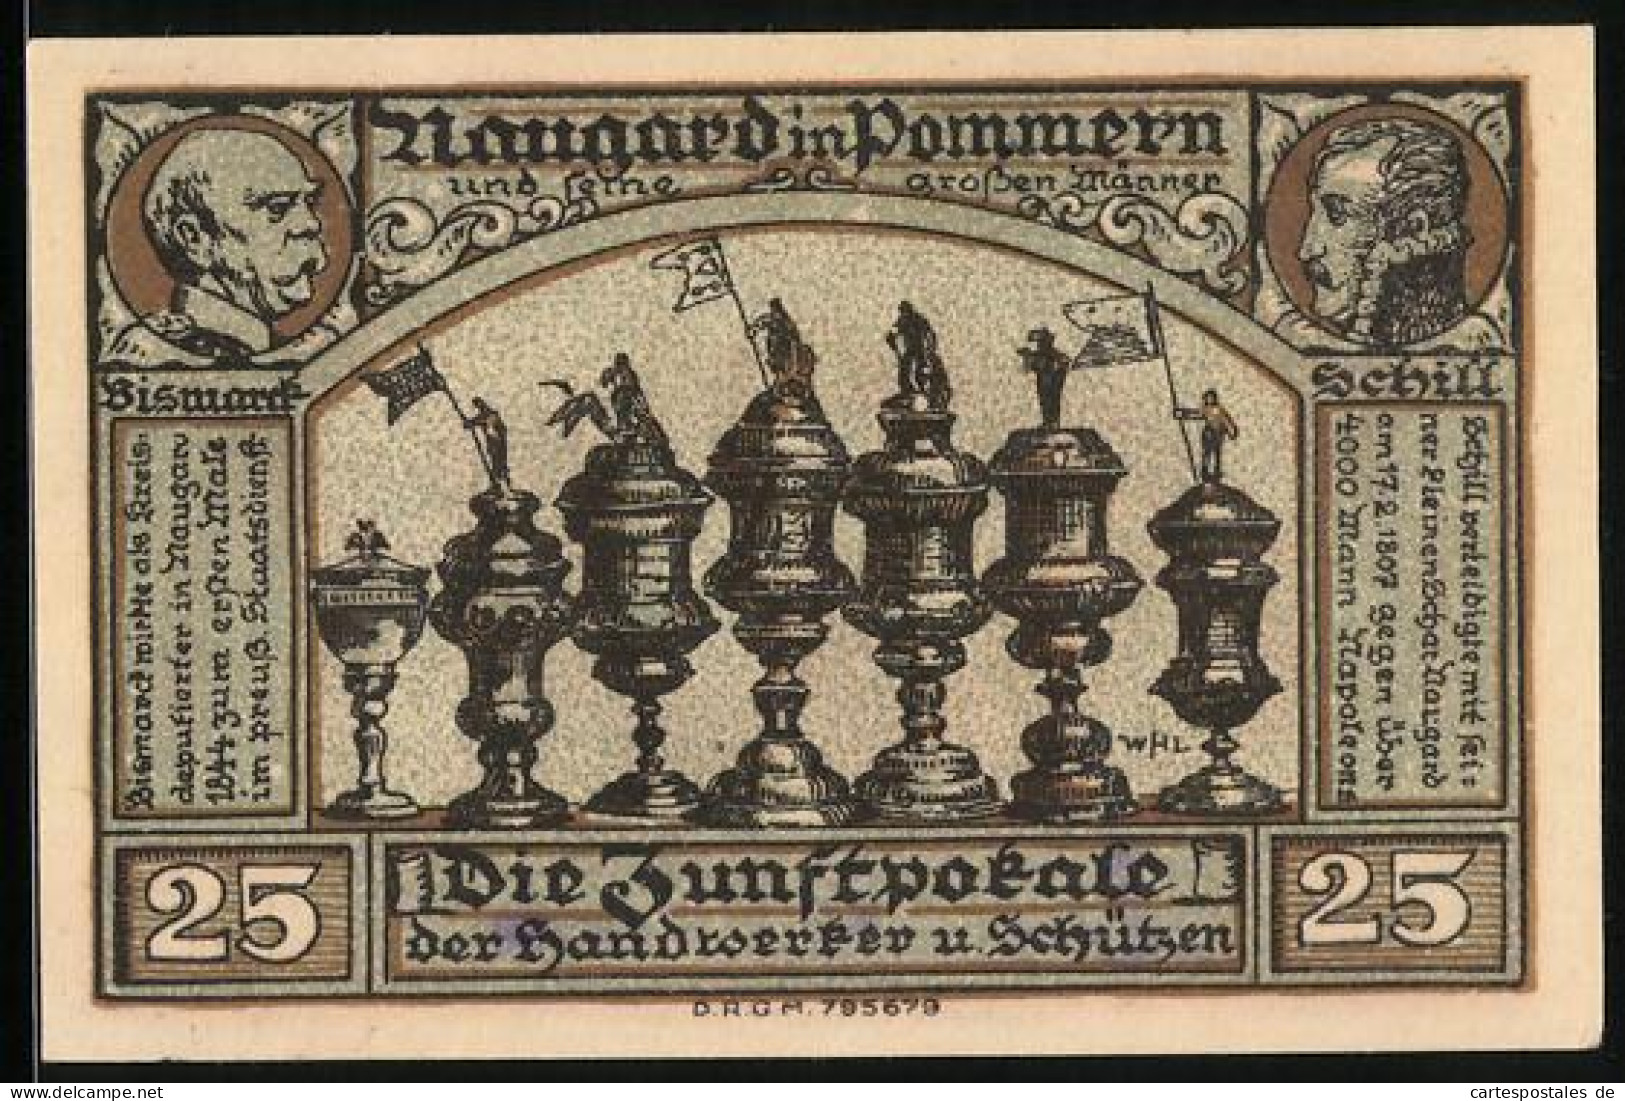 Notgeld Naugard In Pommern 1922, 25 Pfennig, Die Zunftpokale Der Handwerker Und Schützen, Bismarck, Schill  - Lokale Ausgaben